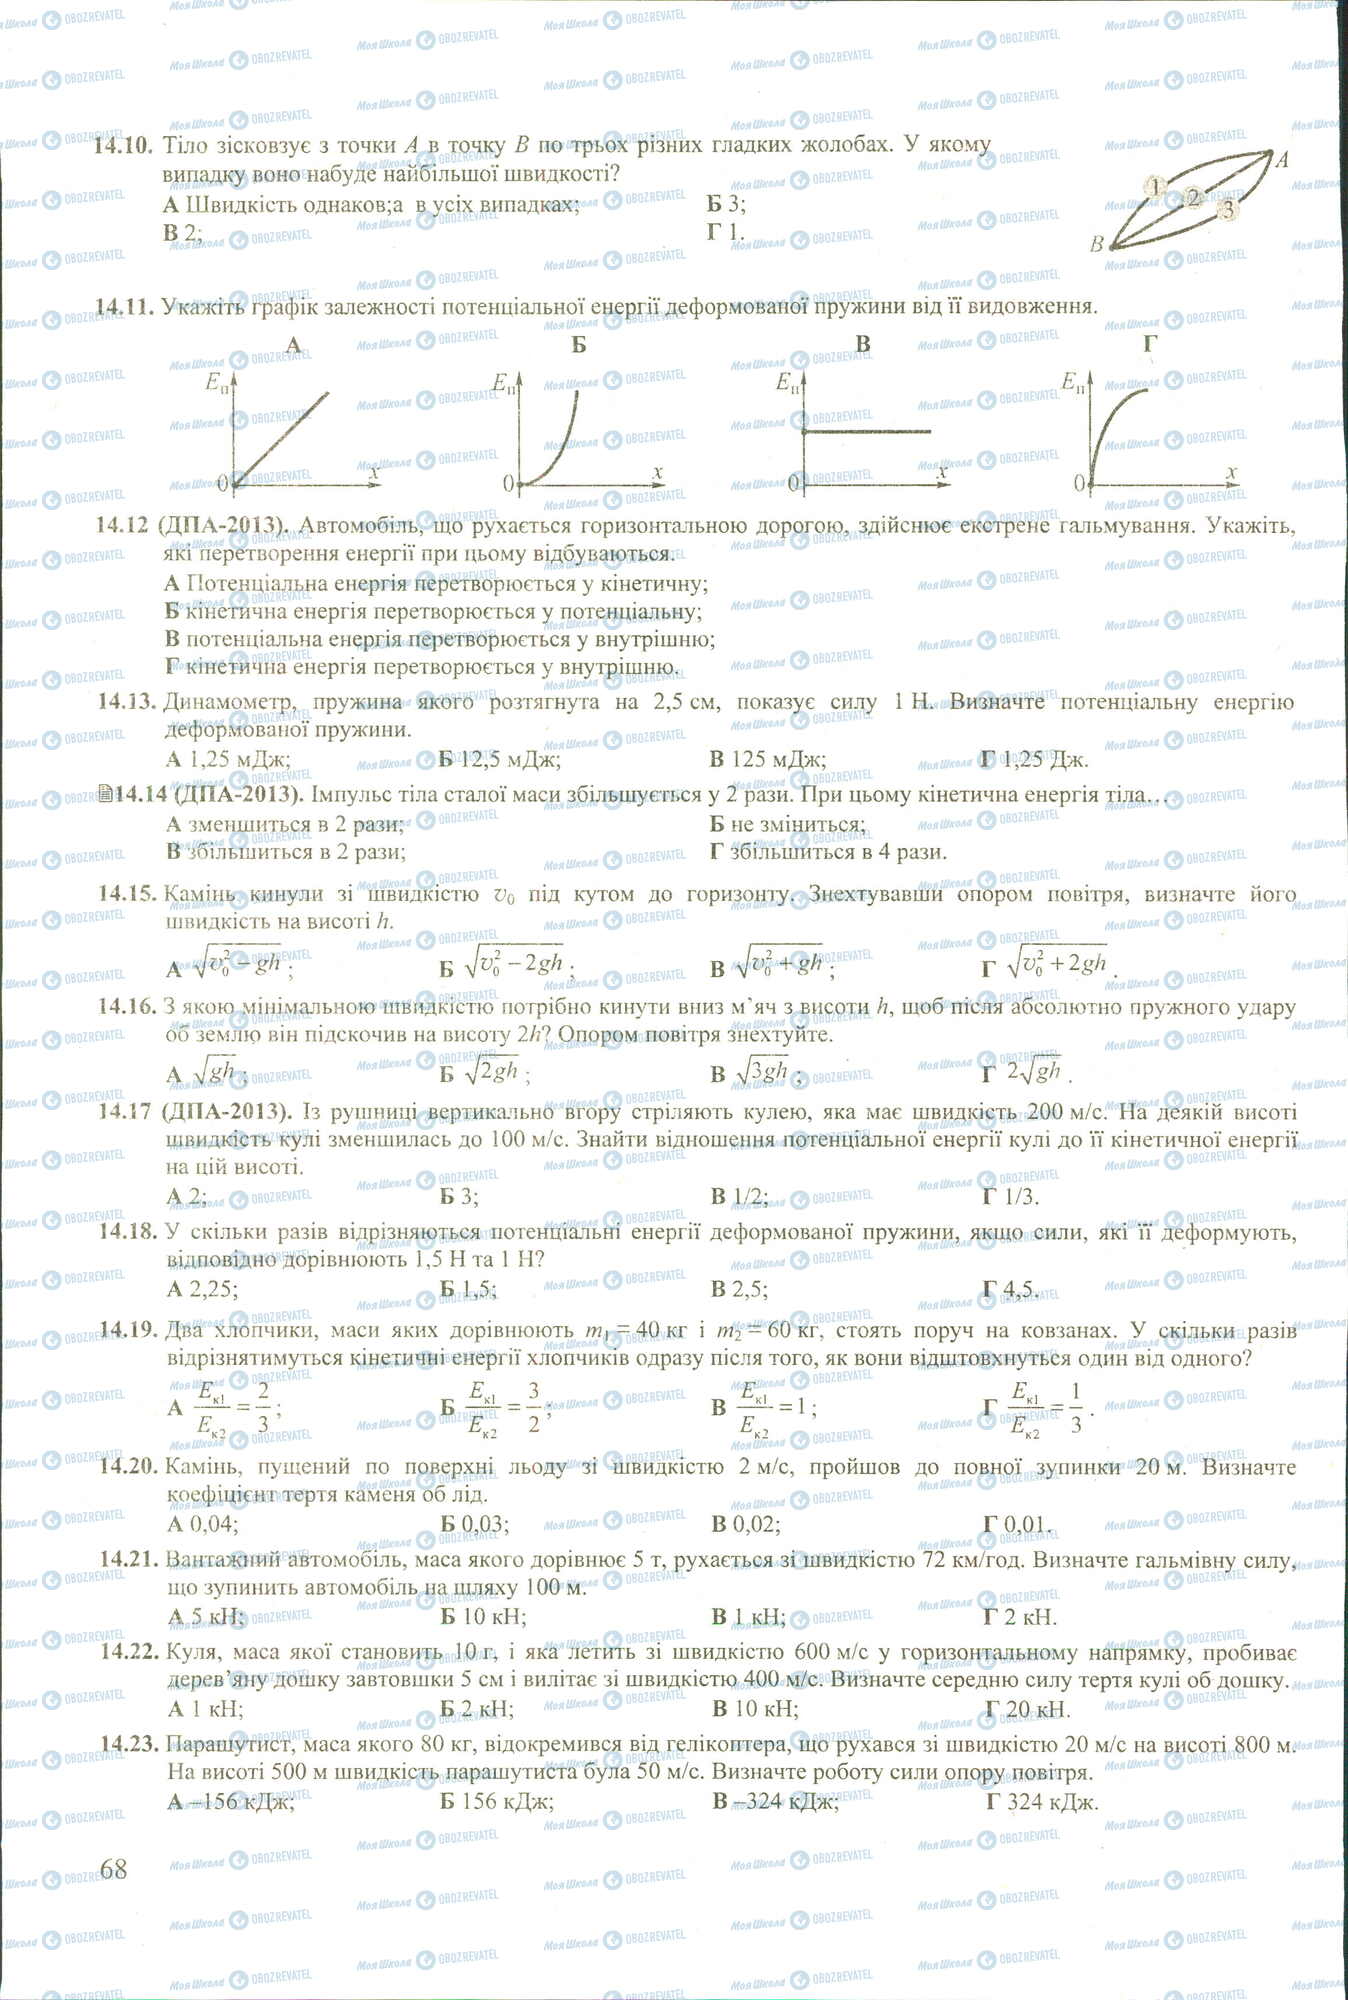 ЗНО Физика 11 класс страница 10-23